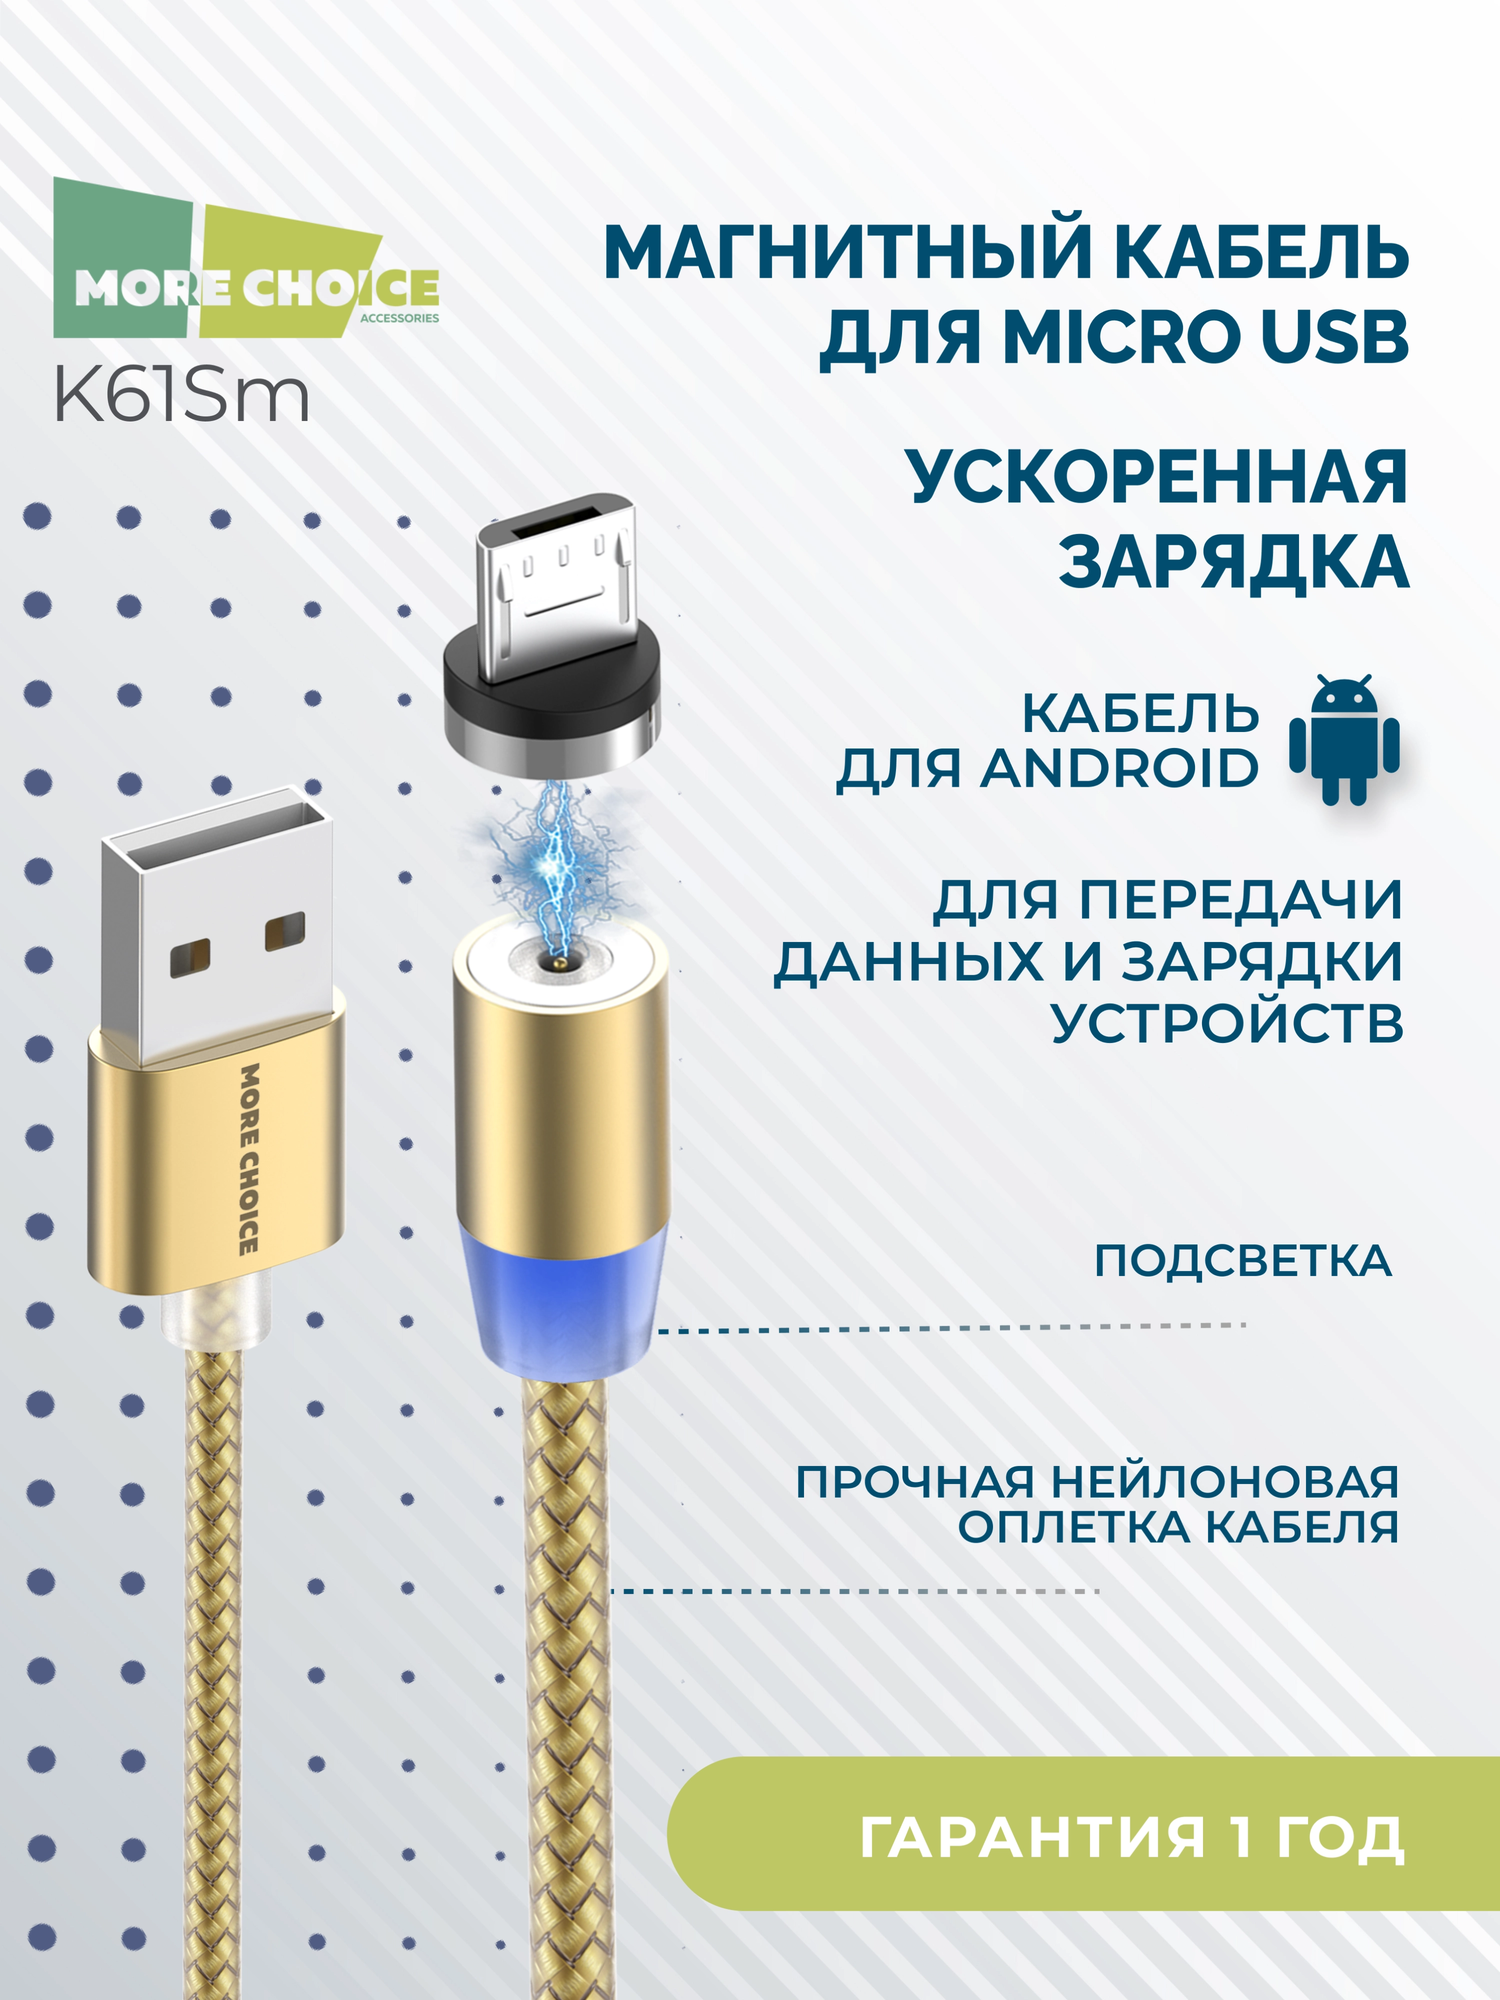 Кабель More choice K61Sm 1м Gold Smart USB 3.0A для micro USB Magnetic золотой - фото №3